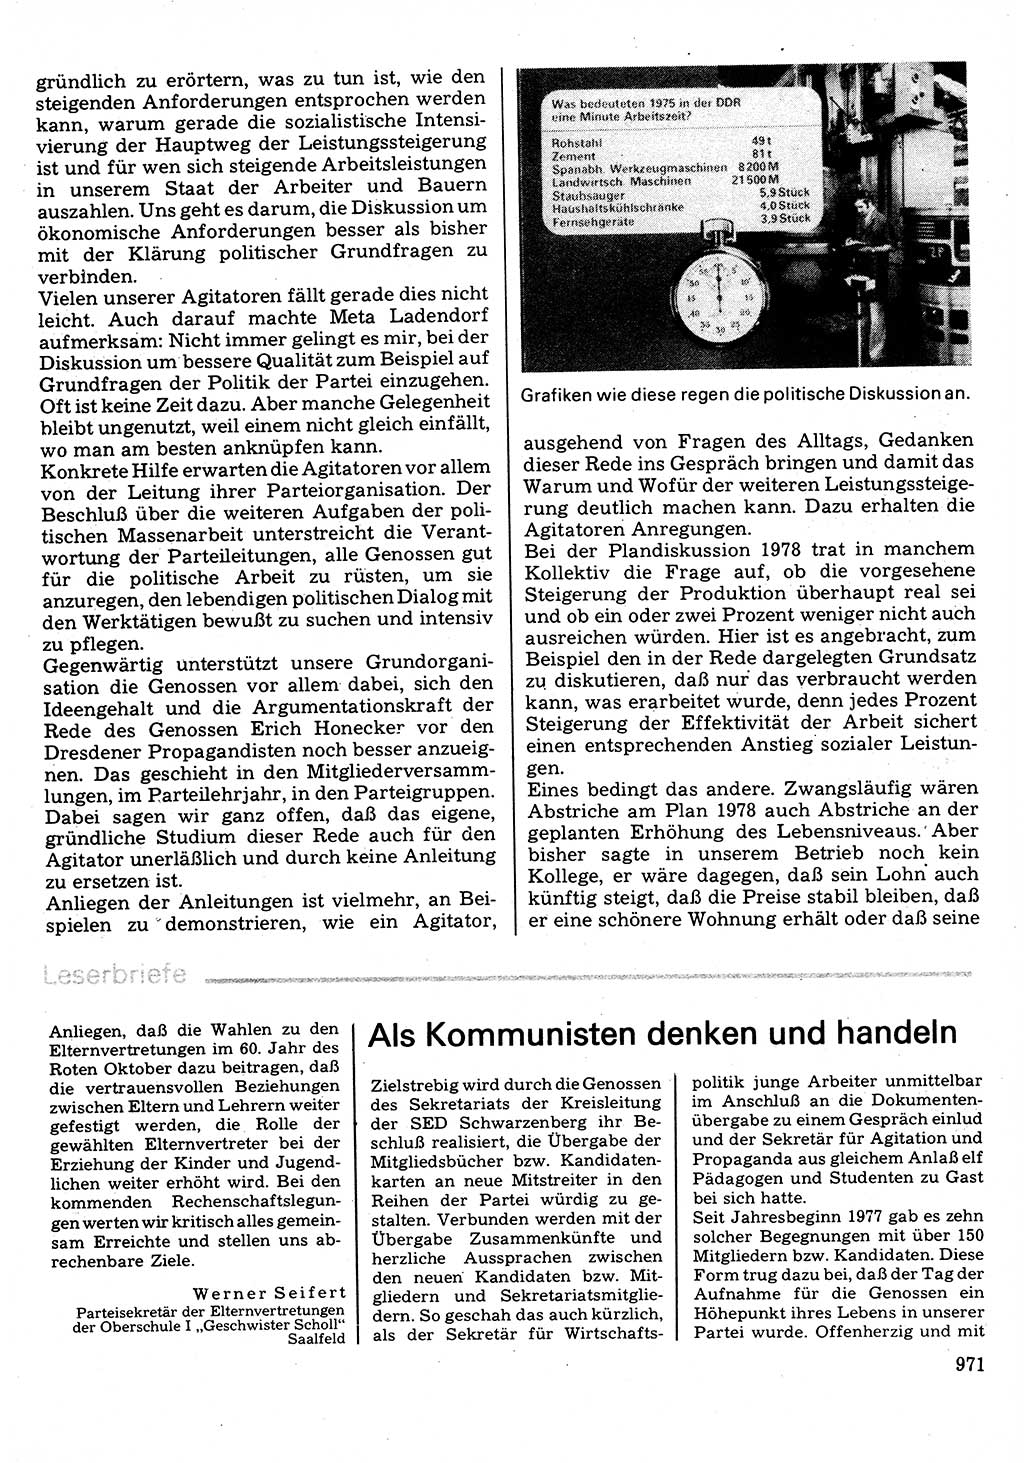 Neuer Weg (NW), Organ des Zentralkomitees (ZK) der SED (Sozialistische Einheitspartei Deutschlands) für Fragen des Parteilebens, 32. Jahrgang [Deutsche Demokratische Republik (DDR)] 1977, Seite 971 (NW ZK SED DDR 1977, S. 971)